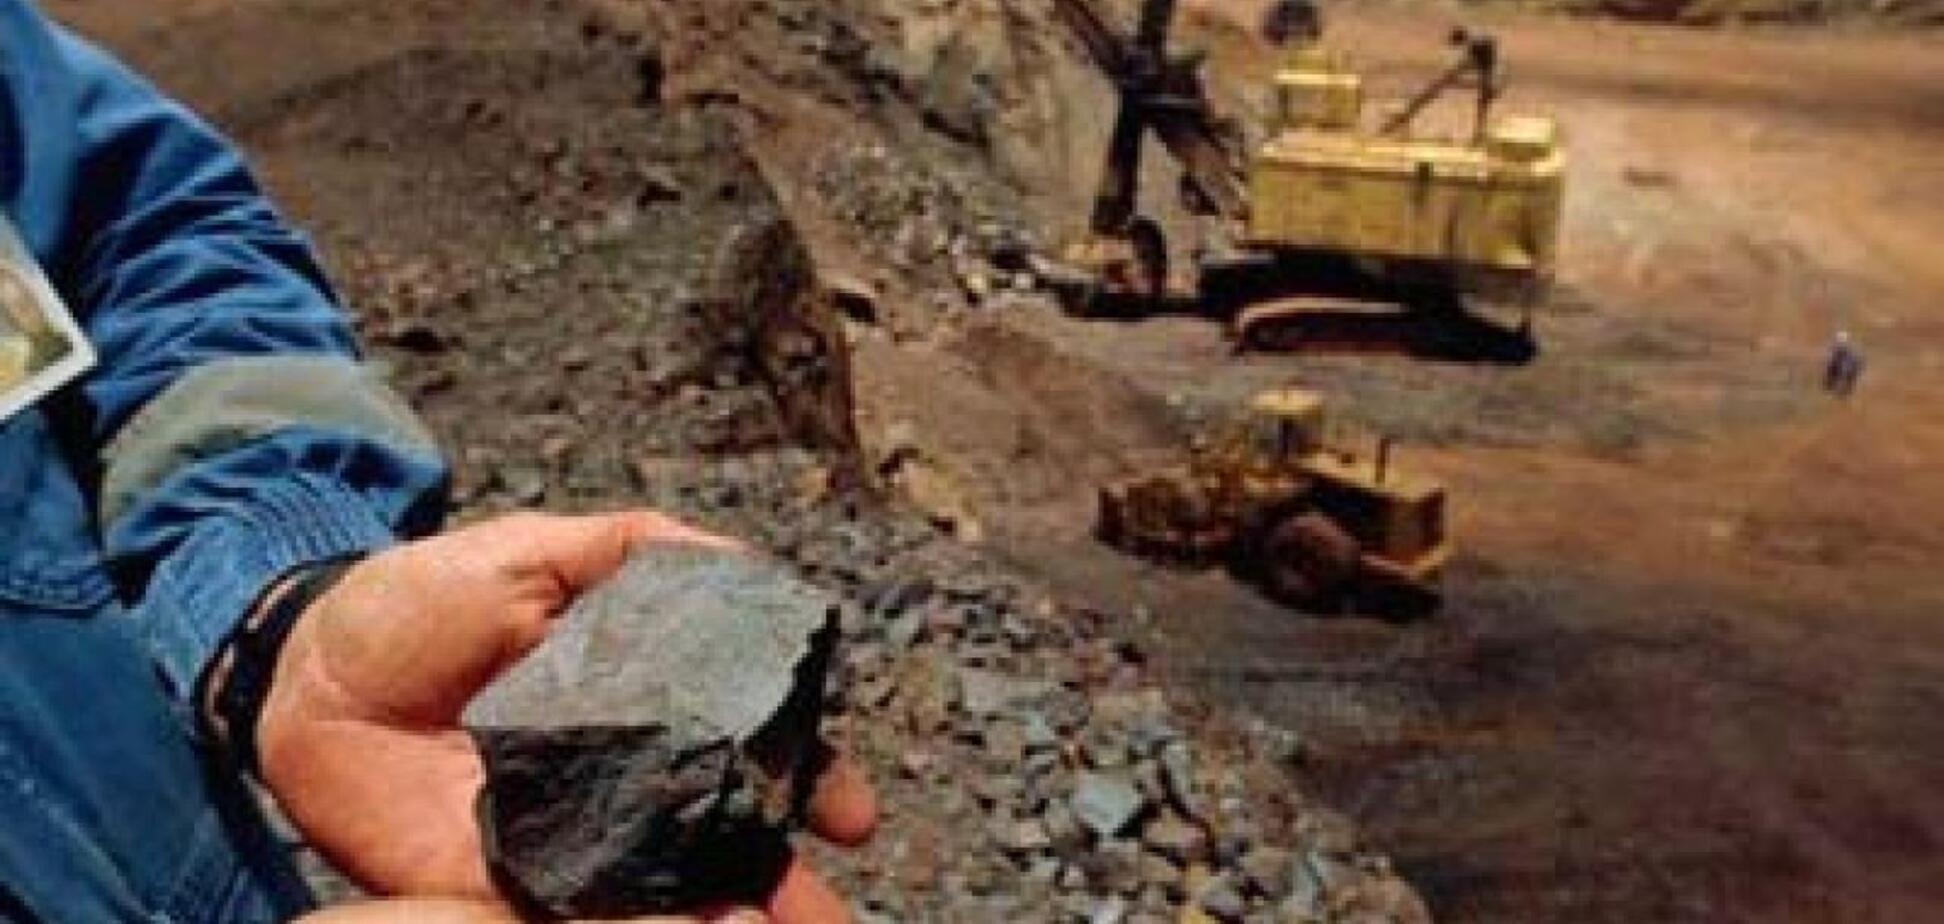 Руководство рудника высказалось по поводу обыска на 'Сухой балке'